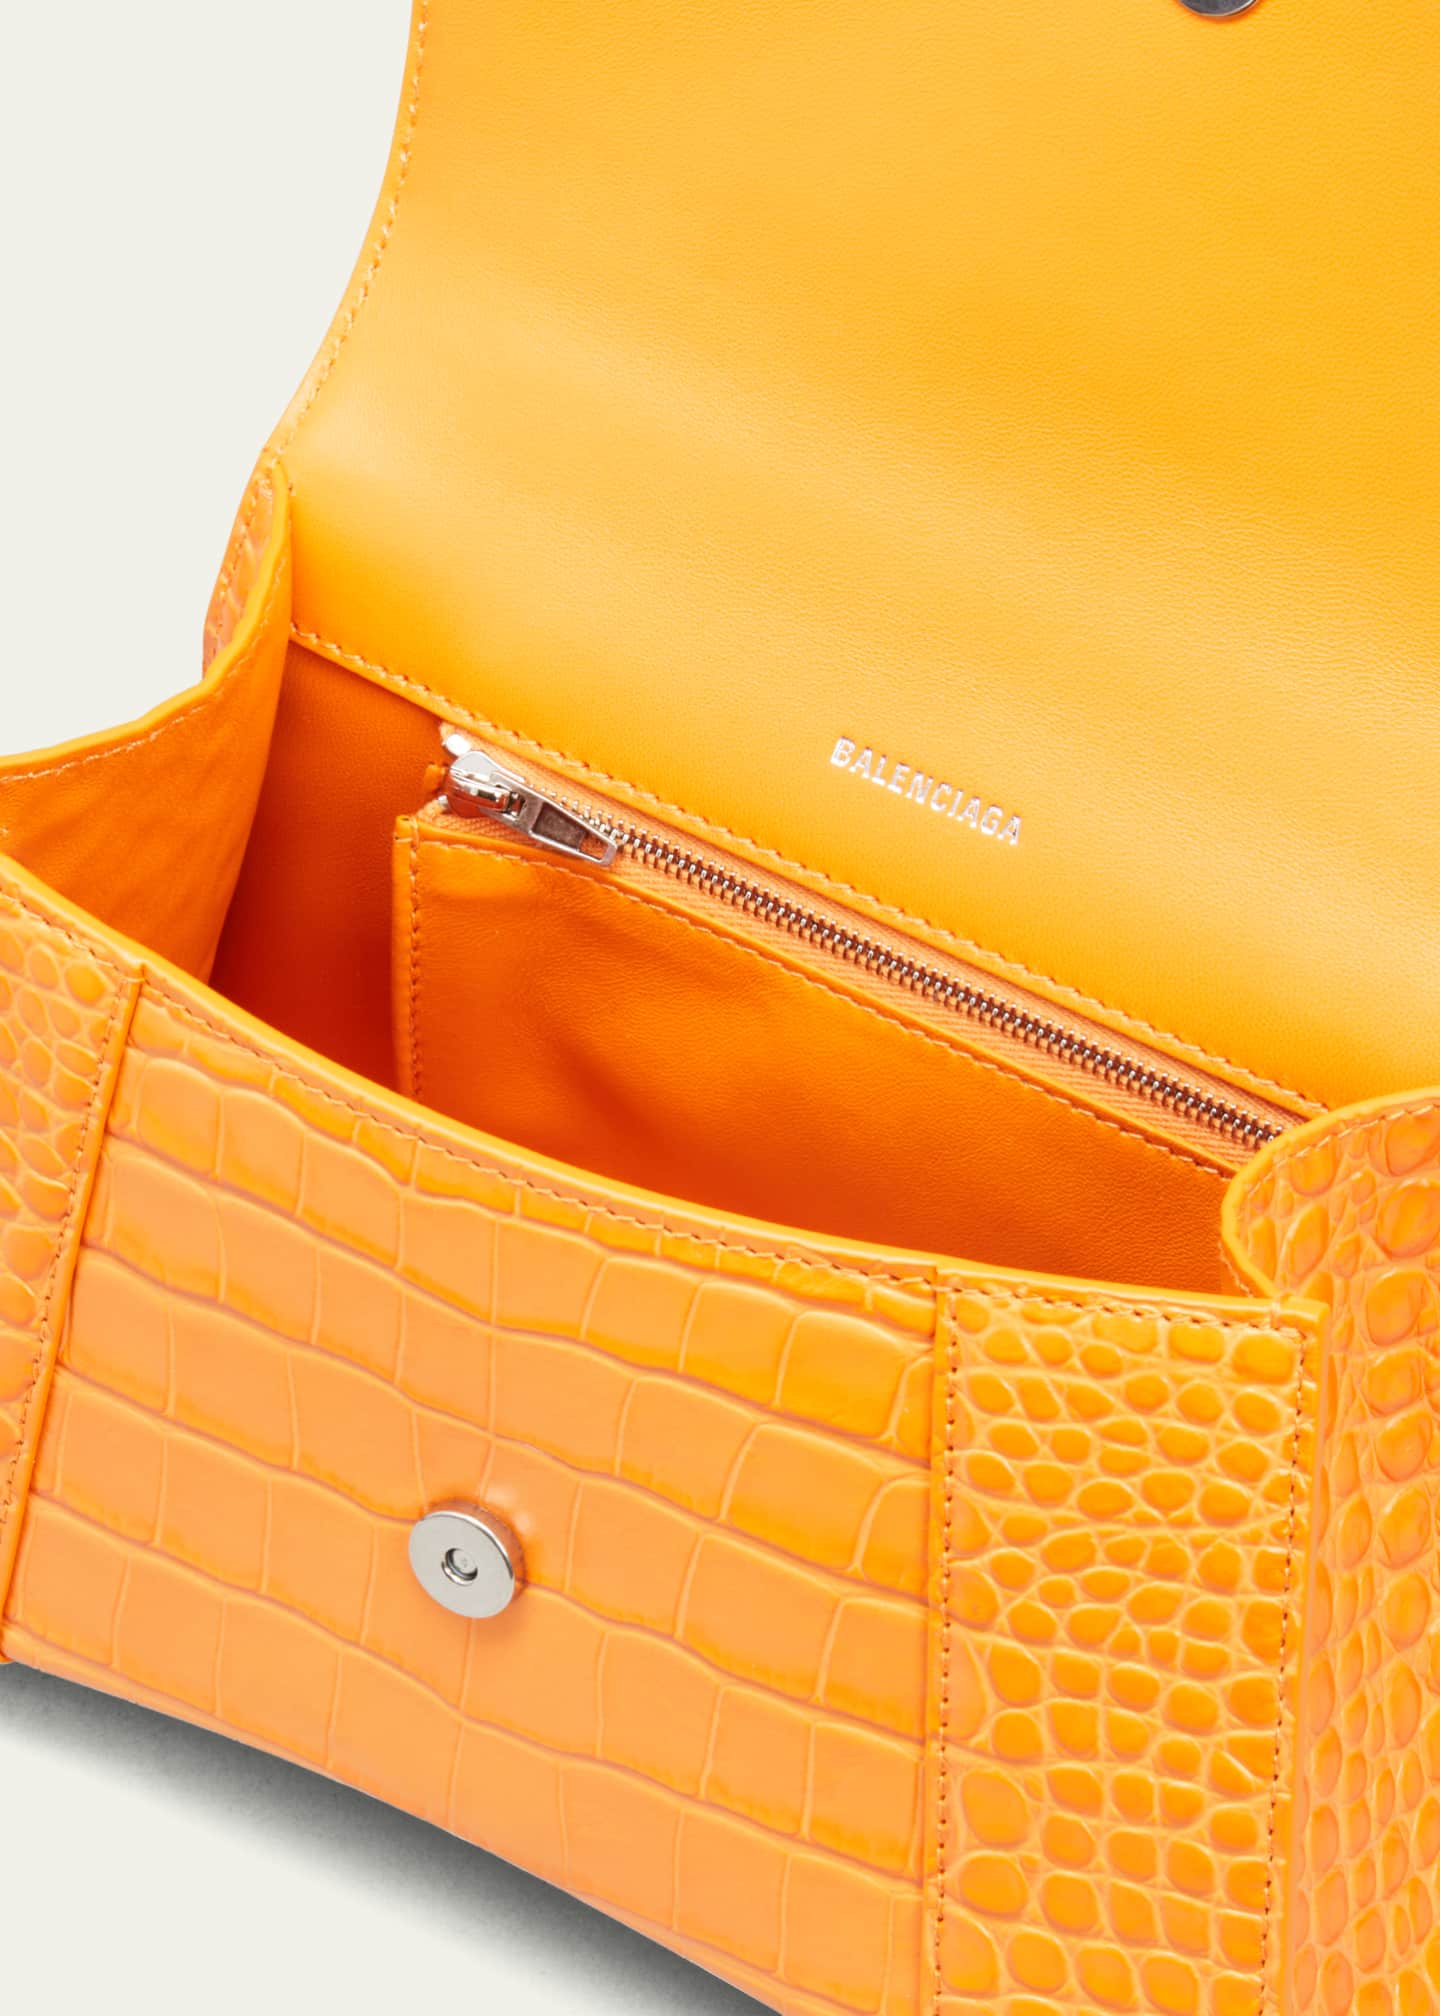 Balenciaga Hourglass Small Shiny Croc-Embossed Top-Handle Bag